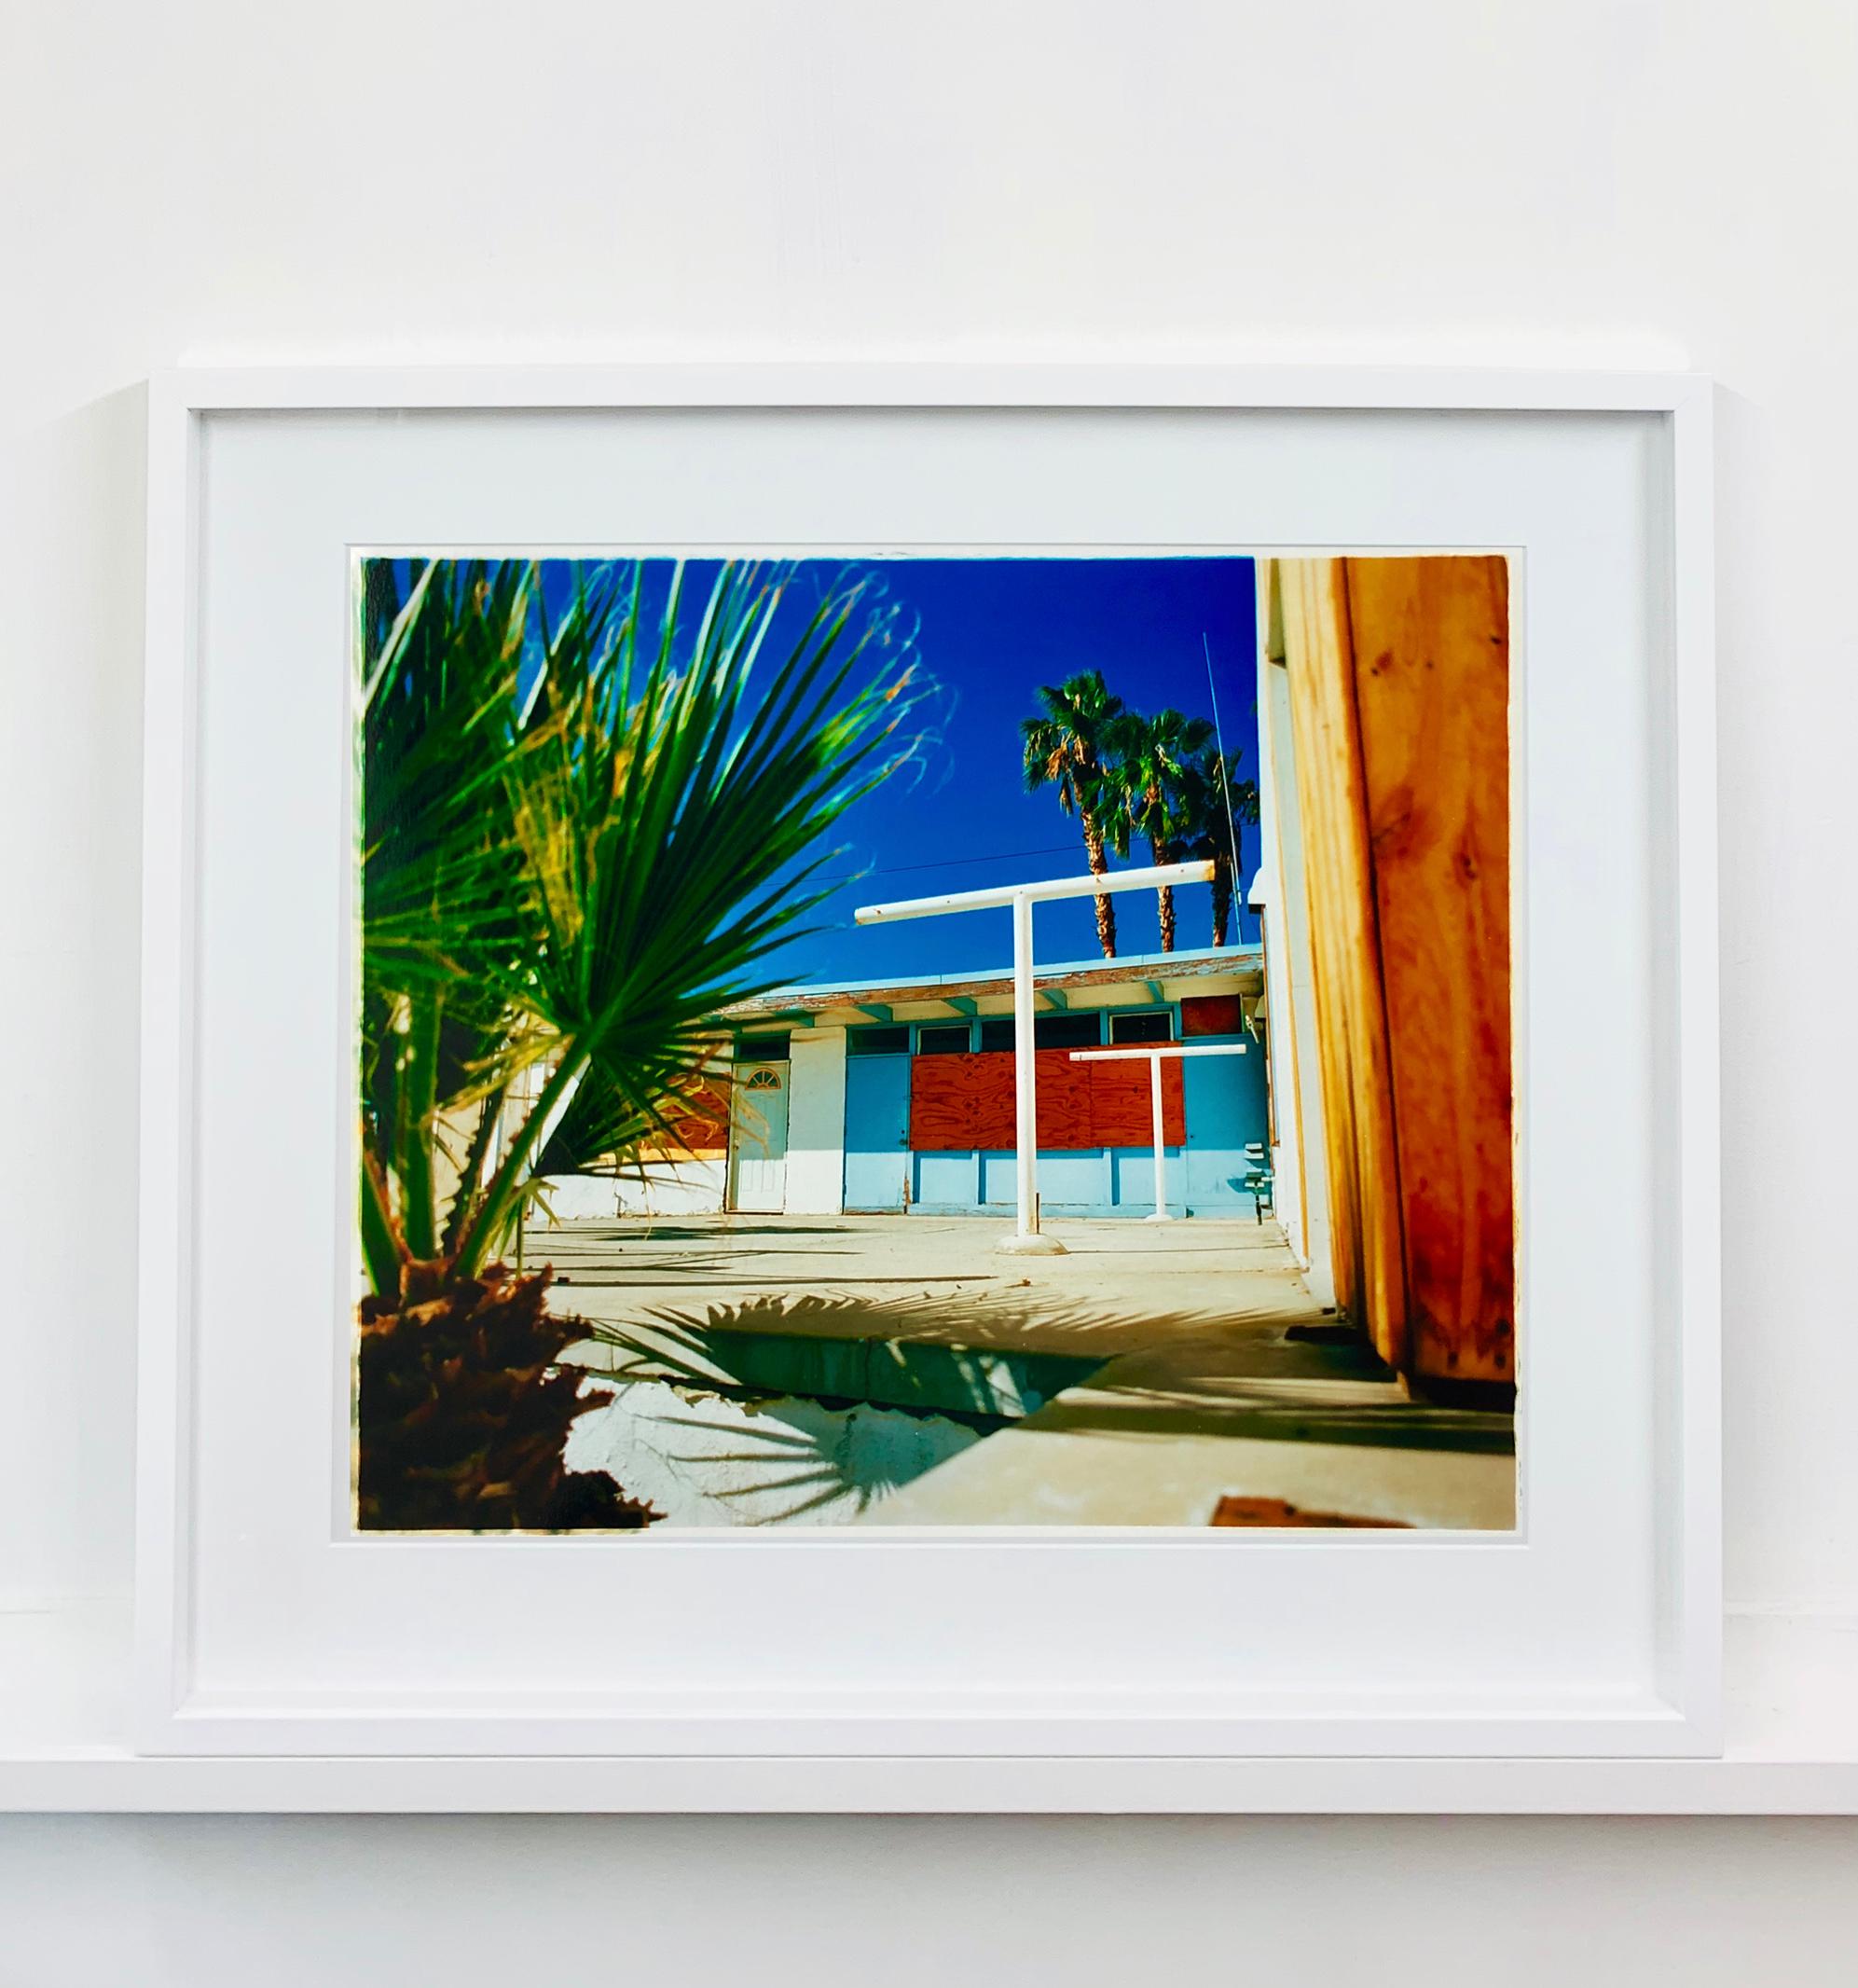 Motel Wüstenlandschaften, Salton Sea, Kalifornien – amerikanische Farbfotografie (Zeitgenössisch), Print, von Richard Heeps